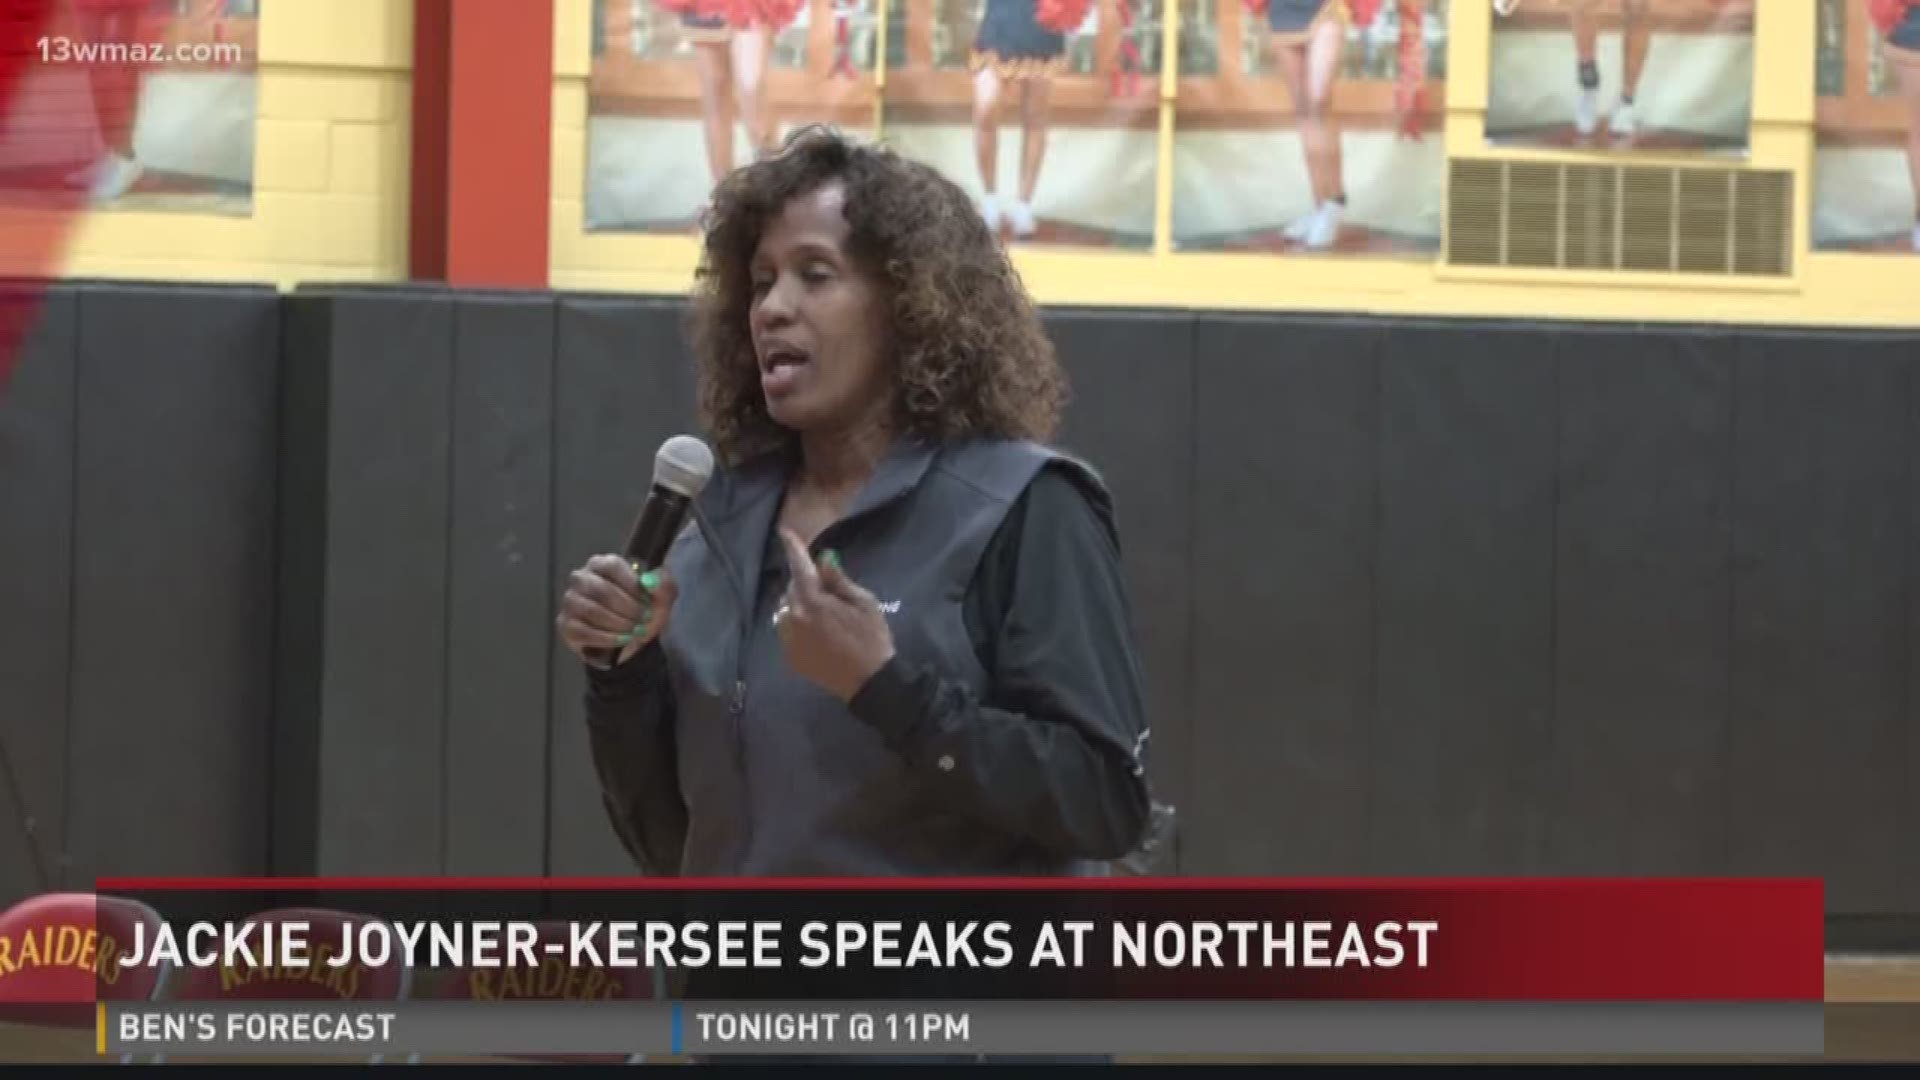 Jackie Joyner-Kersee speaks at Northeast